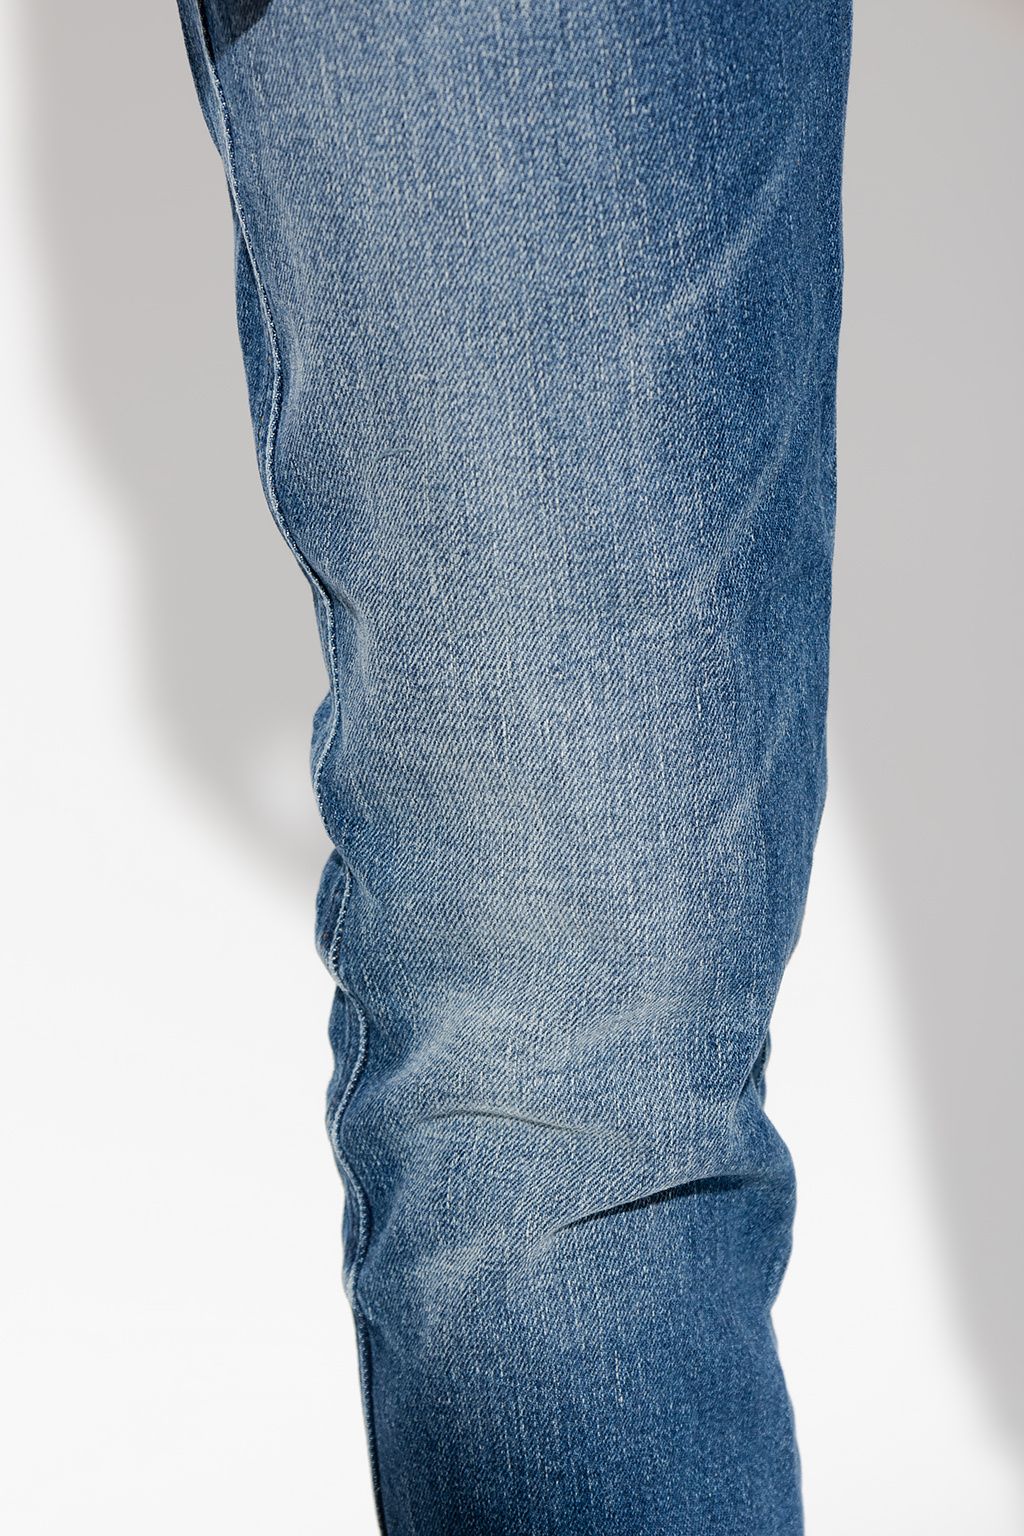 Diesel ‘1994 L.30’ jeans